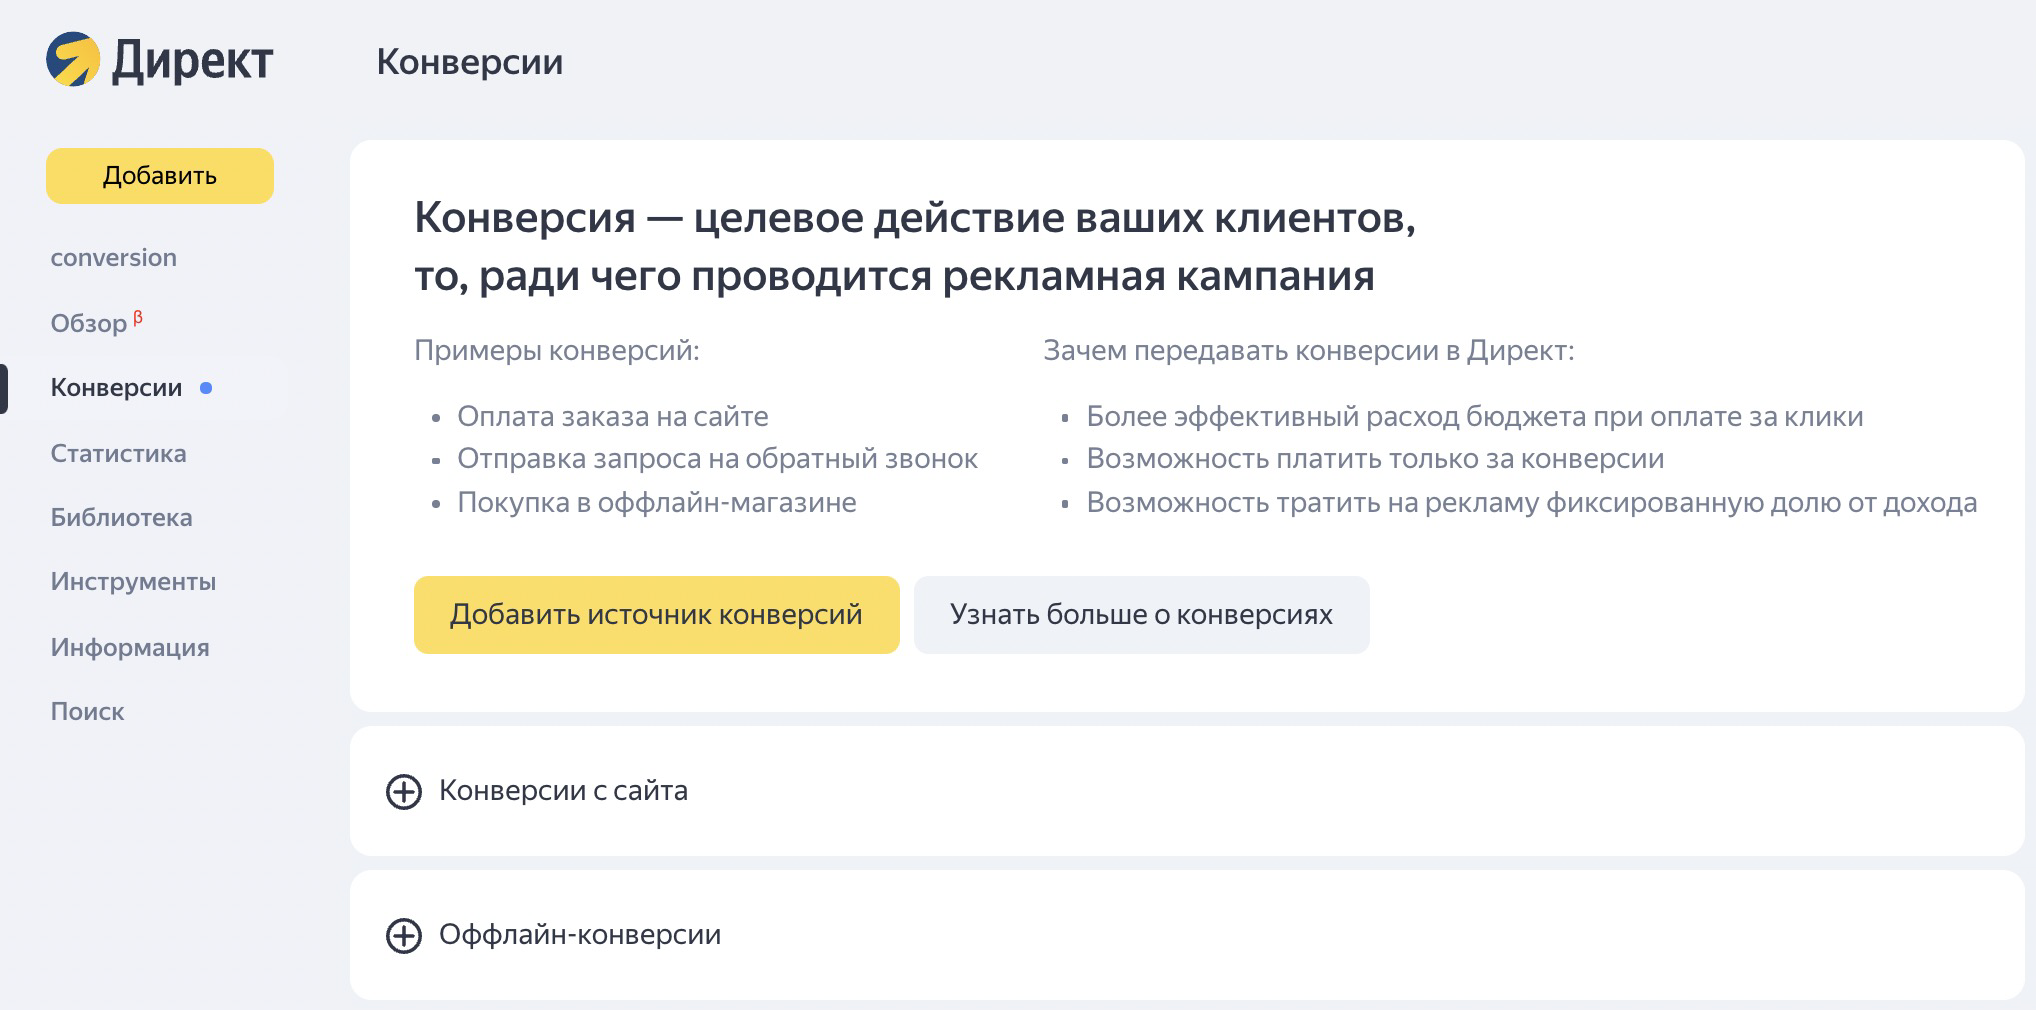 Новый инструмент Яндекса для управления офлайн- и онлайн-конверсиями